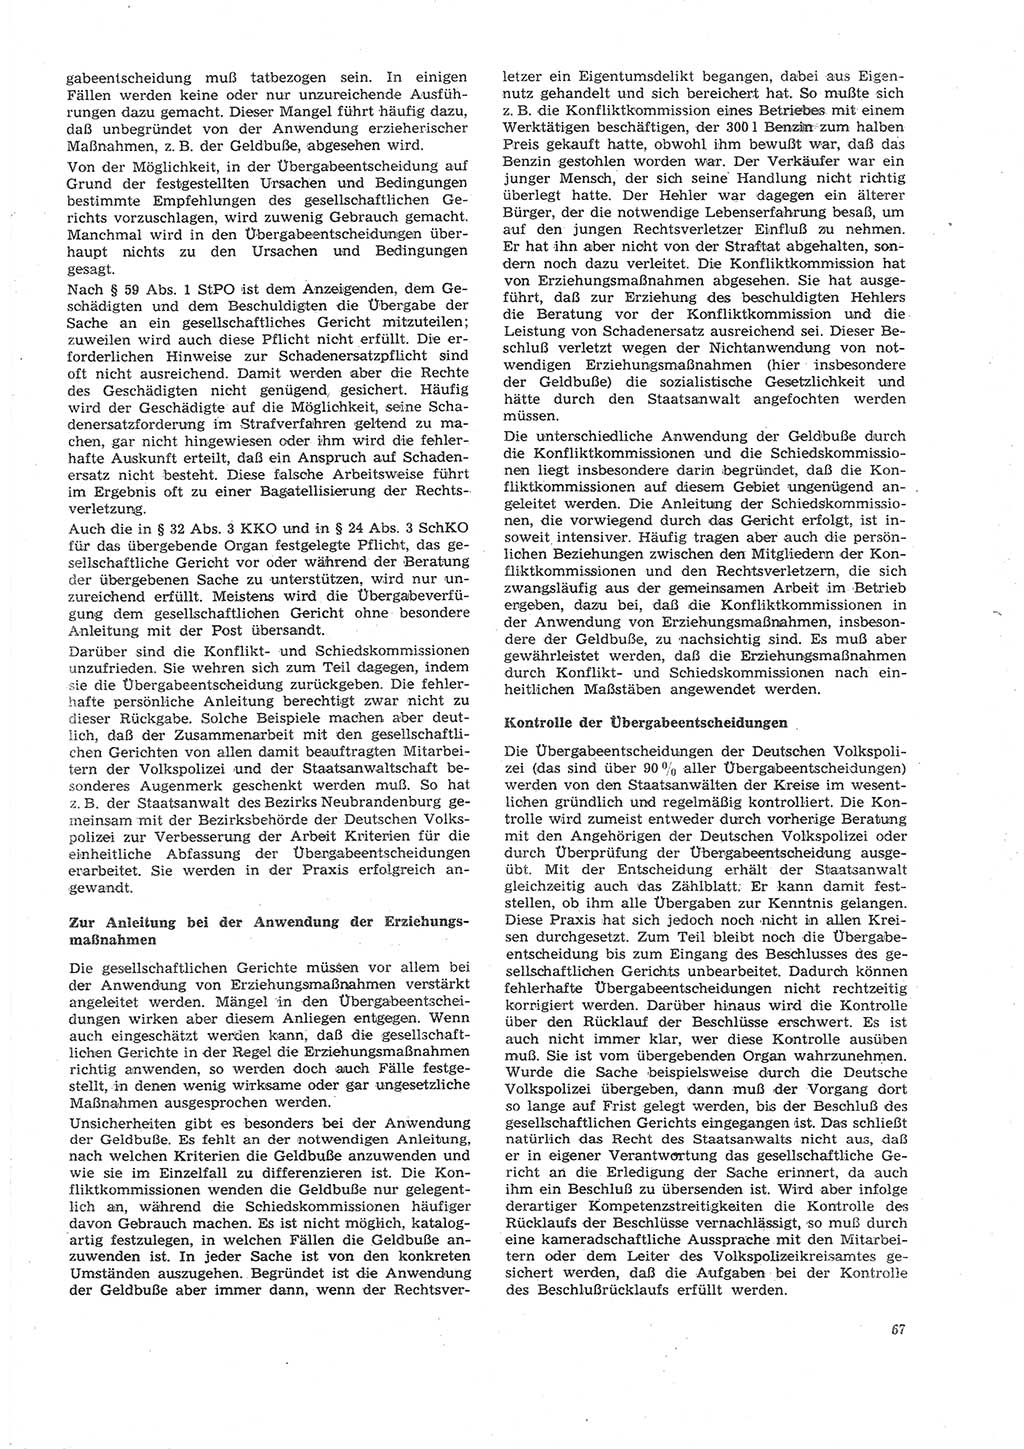 Neue Justiz (NJ), Zeitschrift für Recht und Rechtswissenschaft [Deutsche Demokratische Republik (DDR)], 26. Jahrgang 1972, Seite 67 (NJ DDR 1972, S. 67)